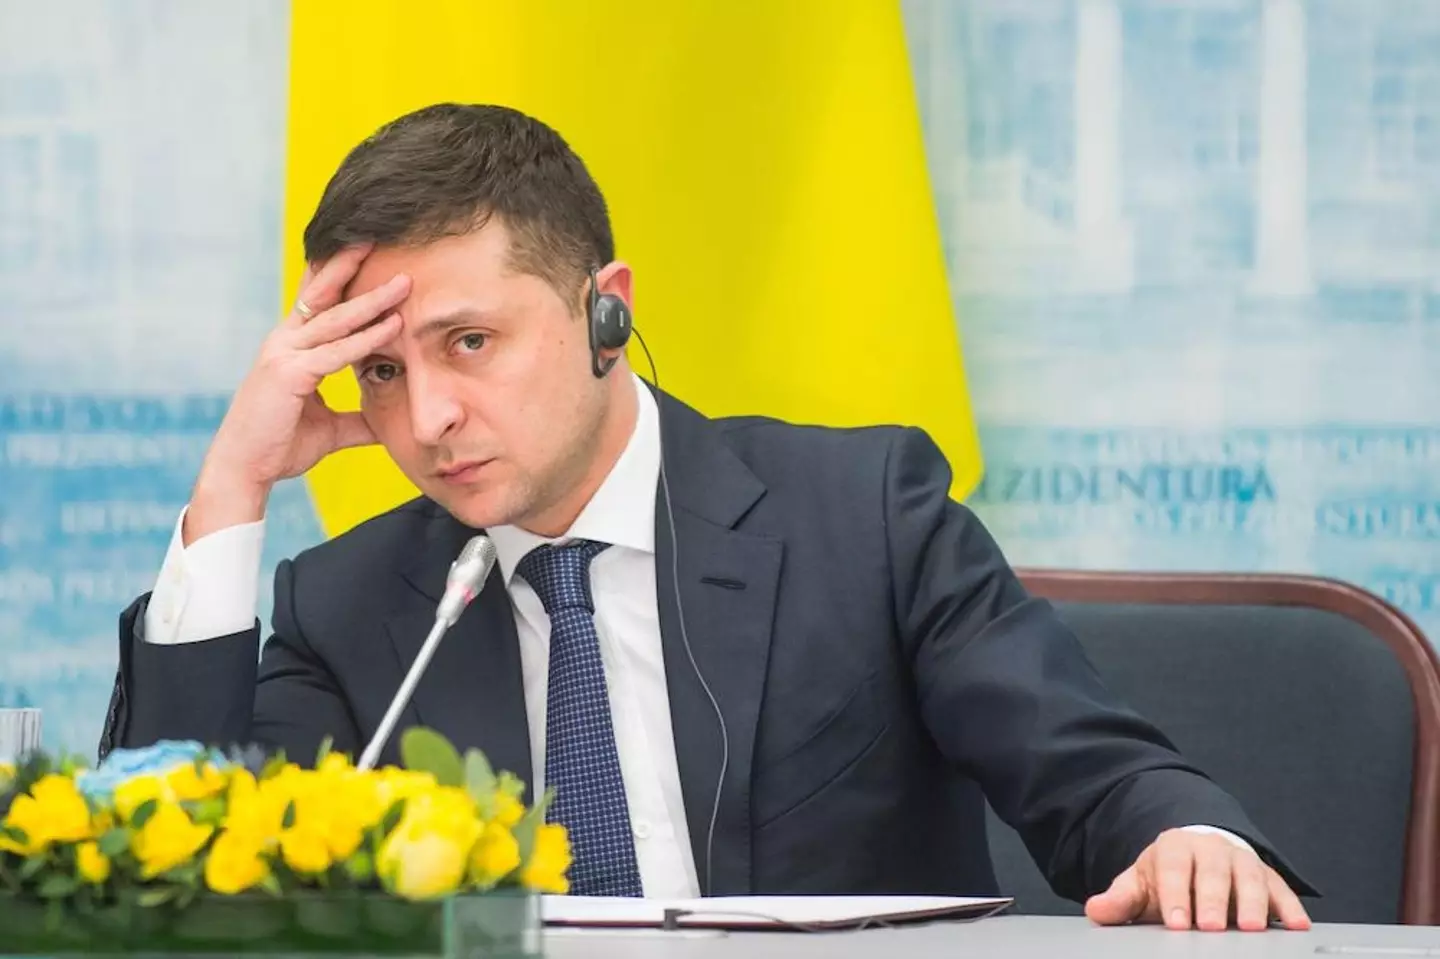 BoJo meant to thank Ukraine President Volodymyr Zelenskyy.